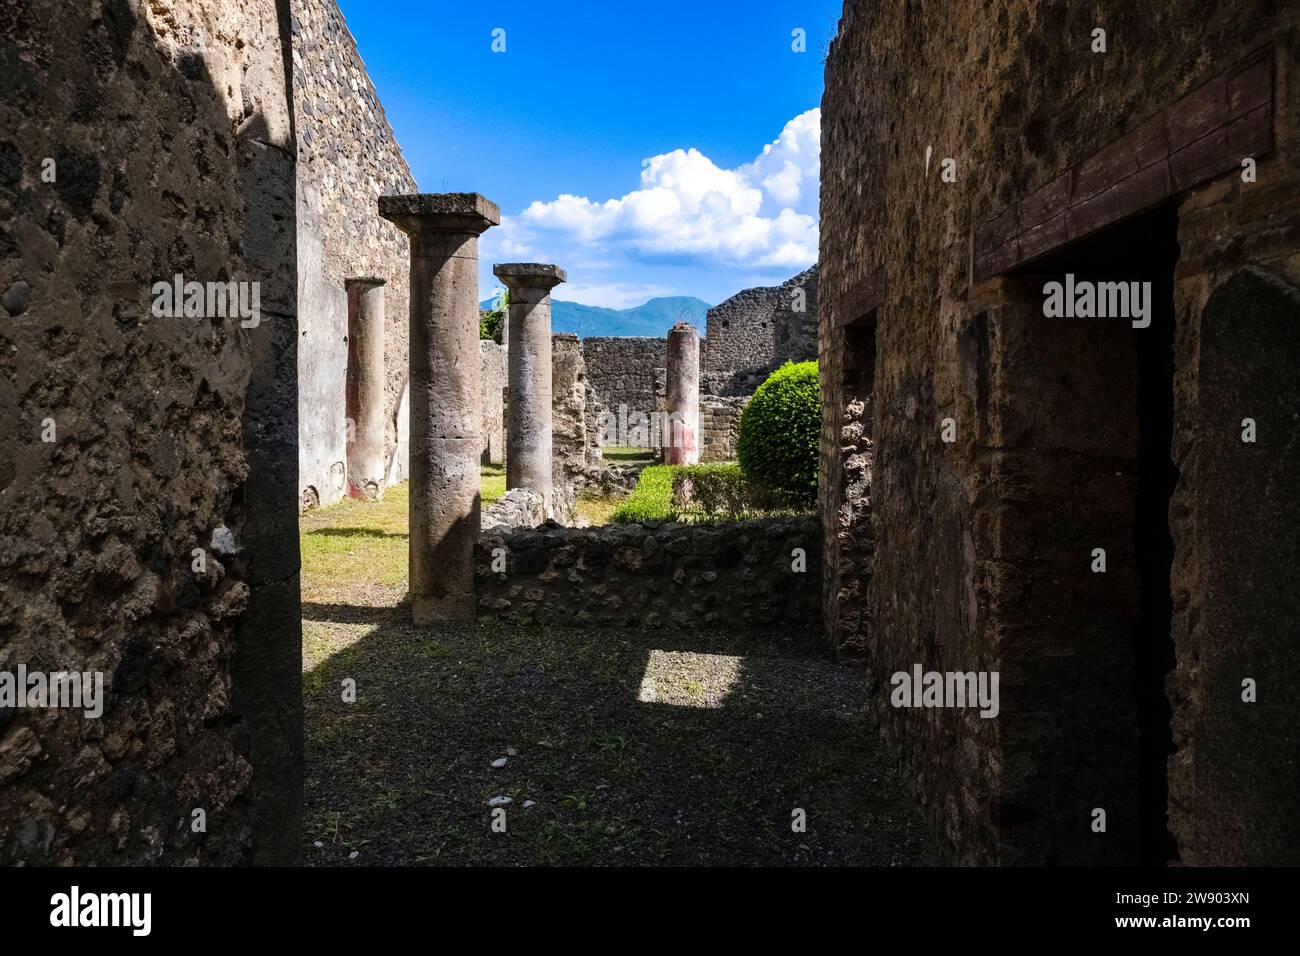 Ruinen in der Via dell'Abbondanza in der archäologischen Stätte von Pompeji, einer antiken Stadt, die durch den Ausbruch des Vesuv im Jahr 79 n. Chr. zerstört wurde. Stockfoto